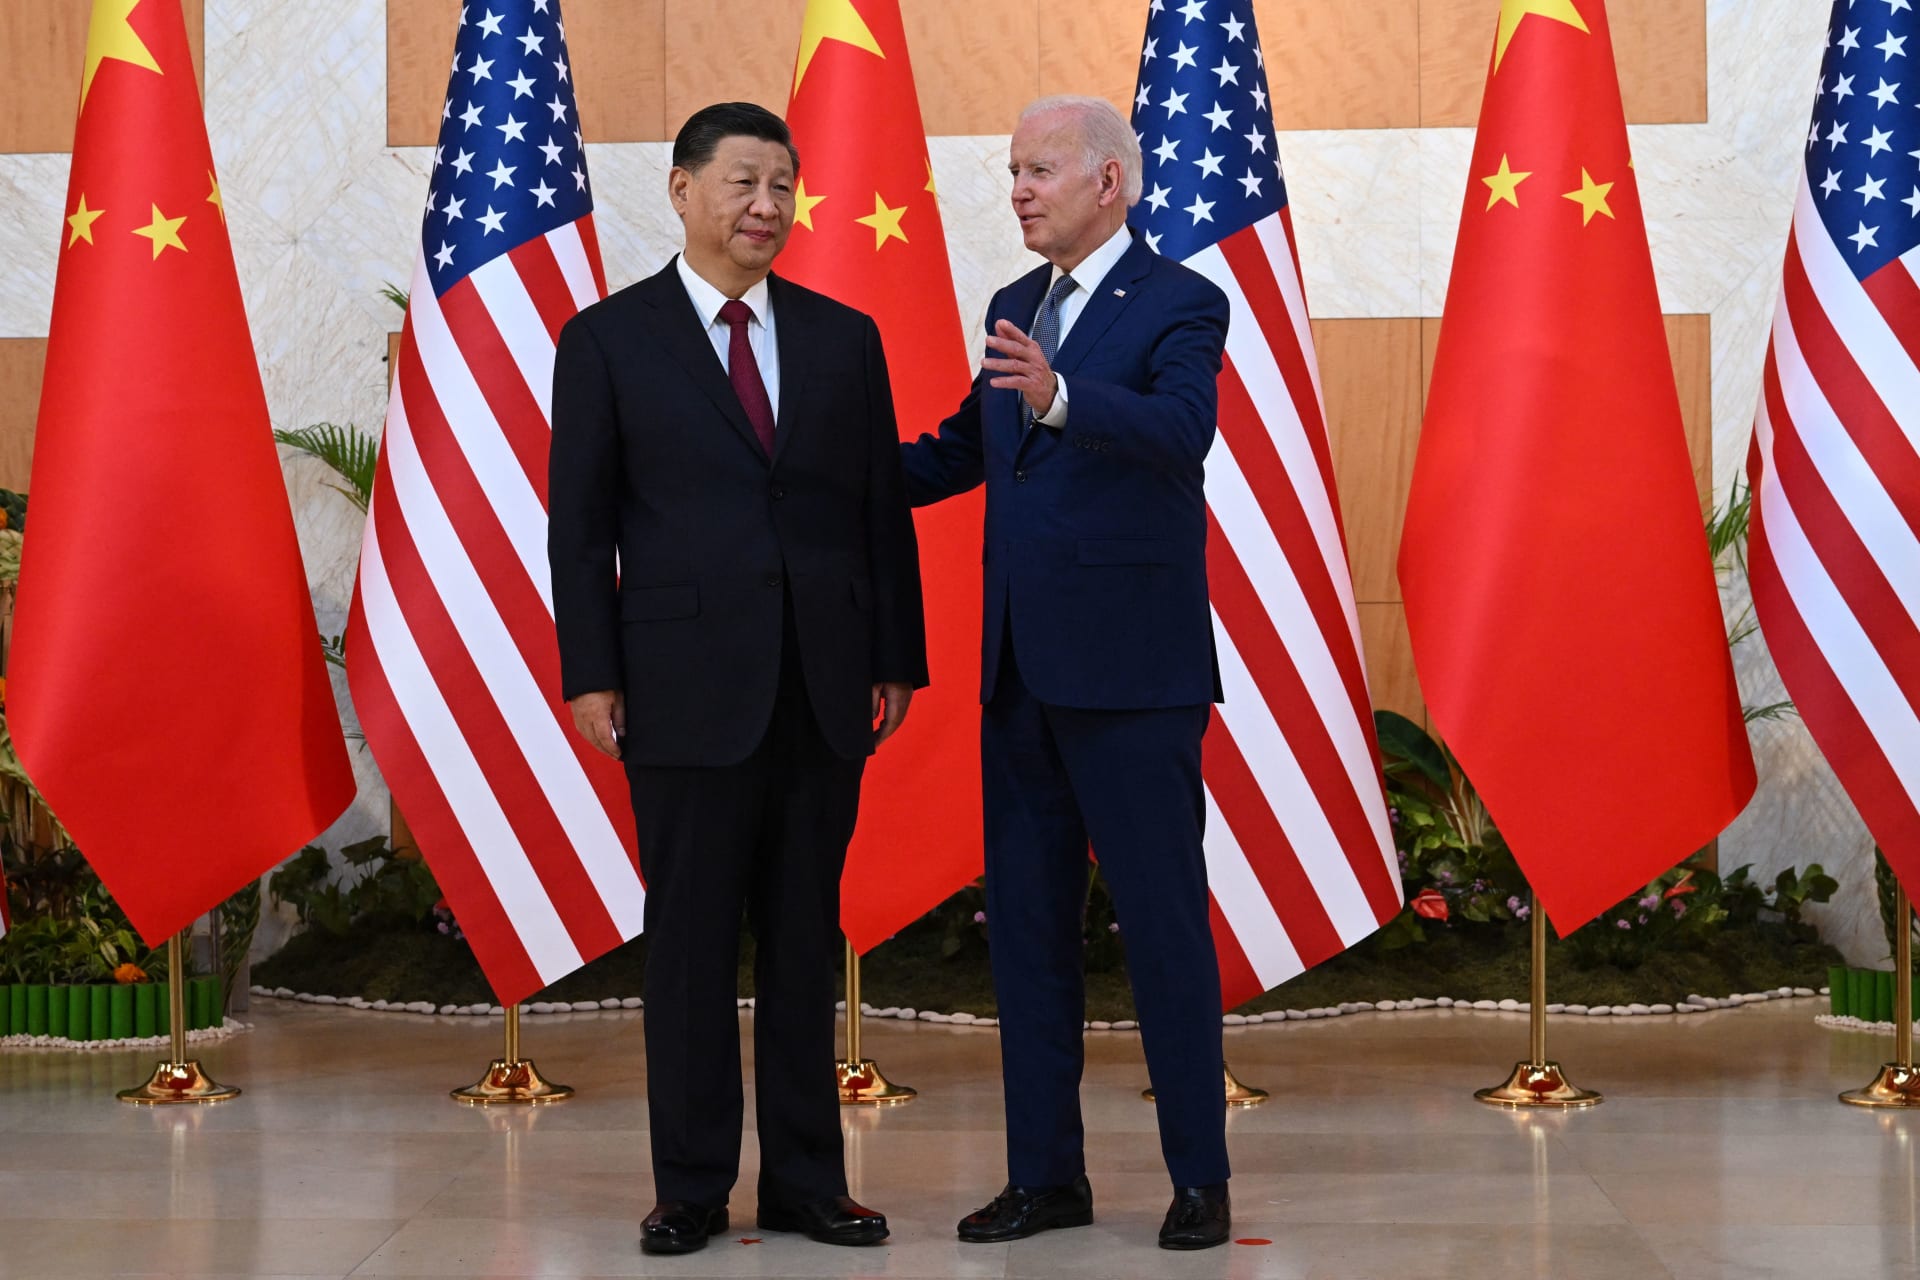 بايدن: أشعر بـ"خيبة أمل" لعدم رؤية الرئيس الصيني بقمة مجموعة العشرين